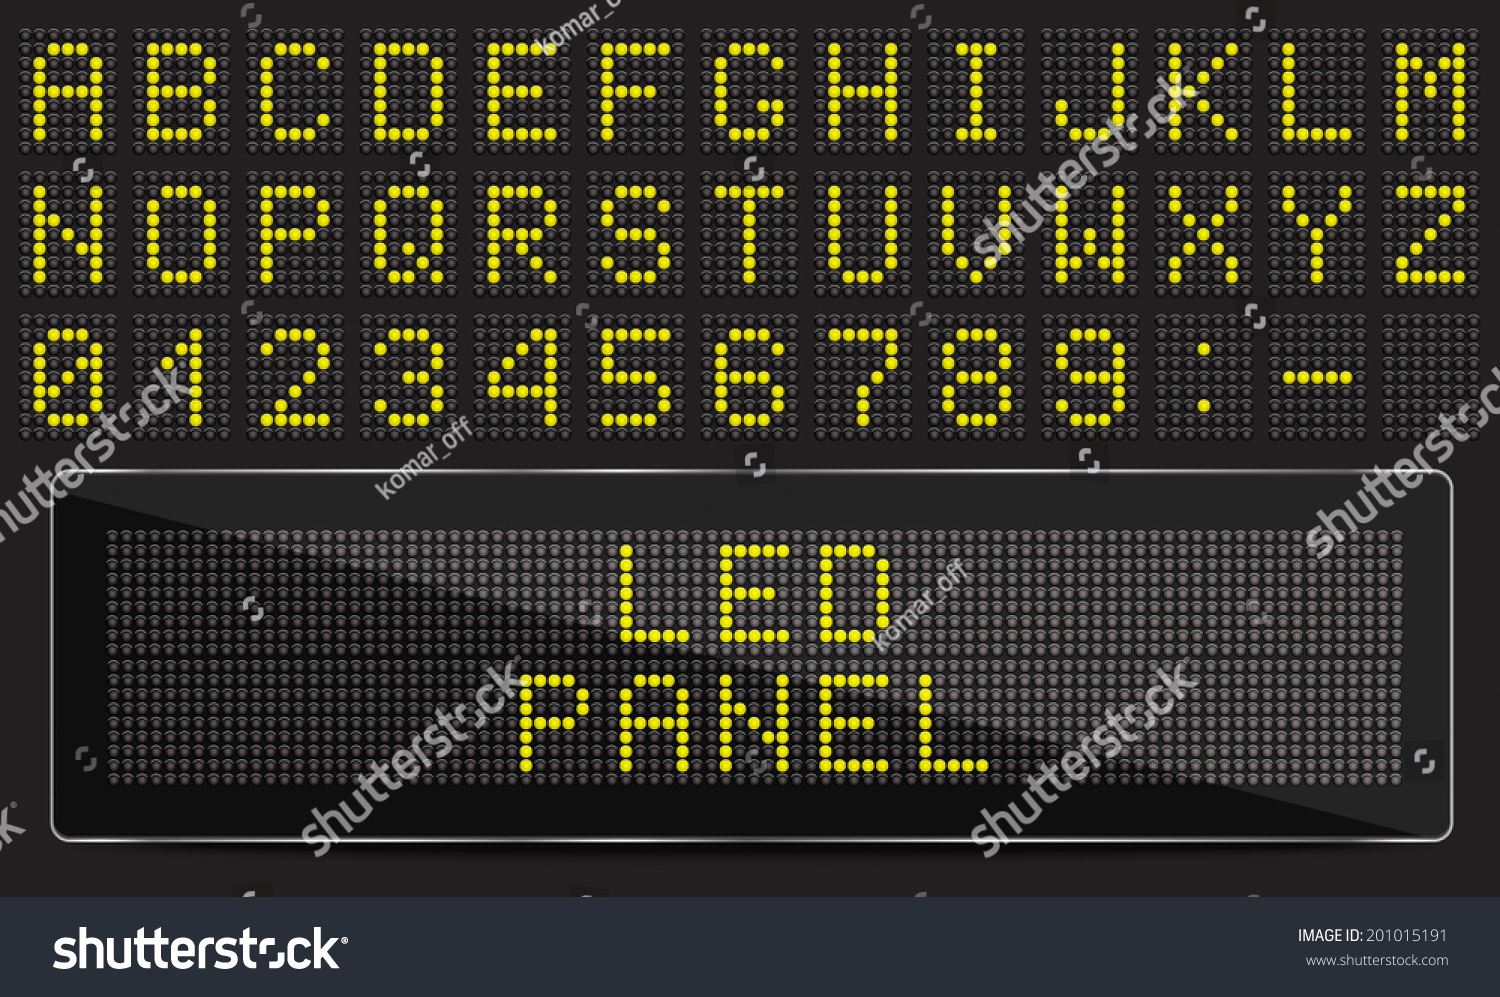 SVG of LED digital font on black background, vector illustration svg